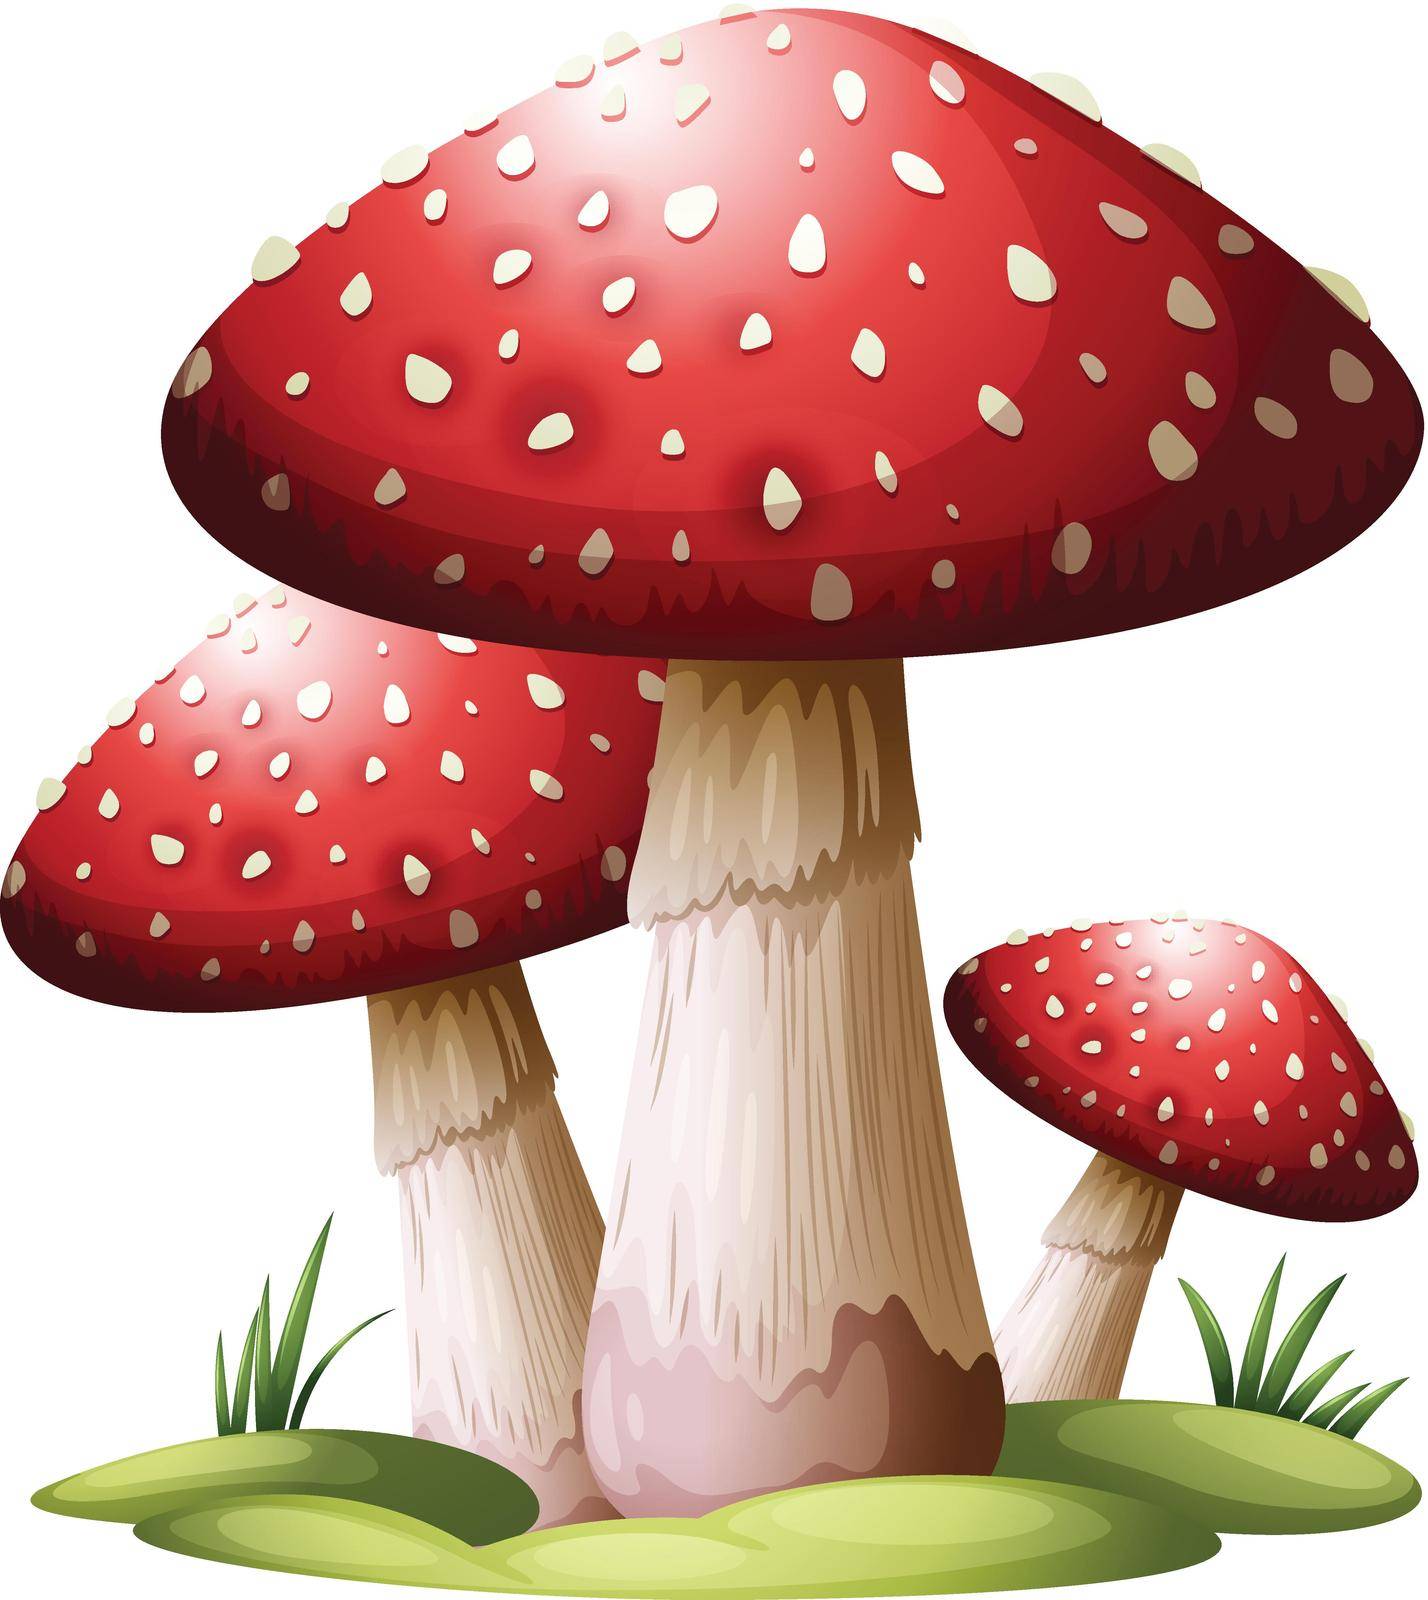 Red mushroom by iimages